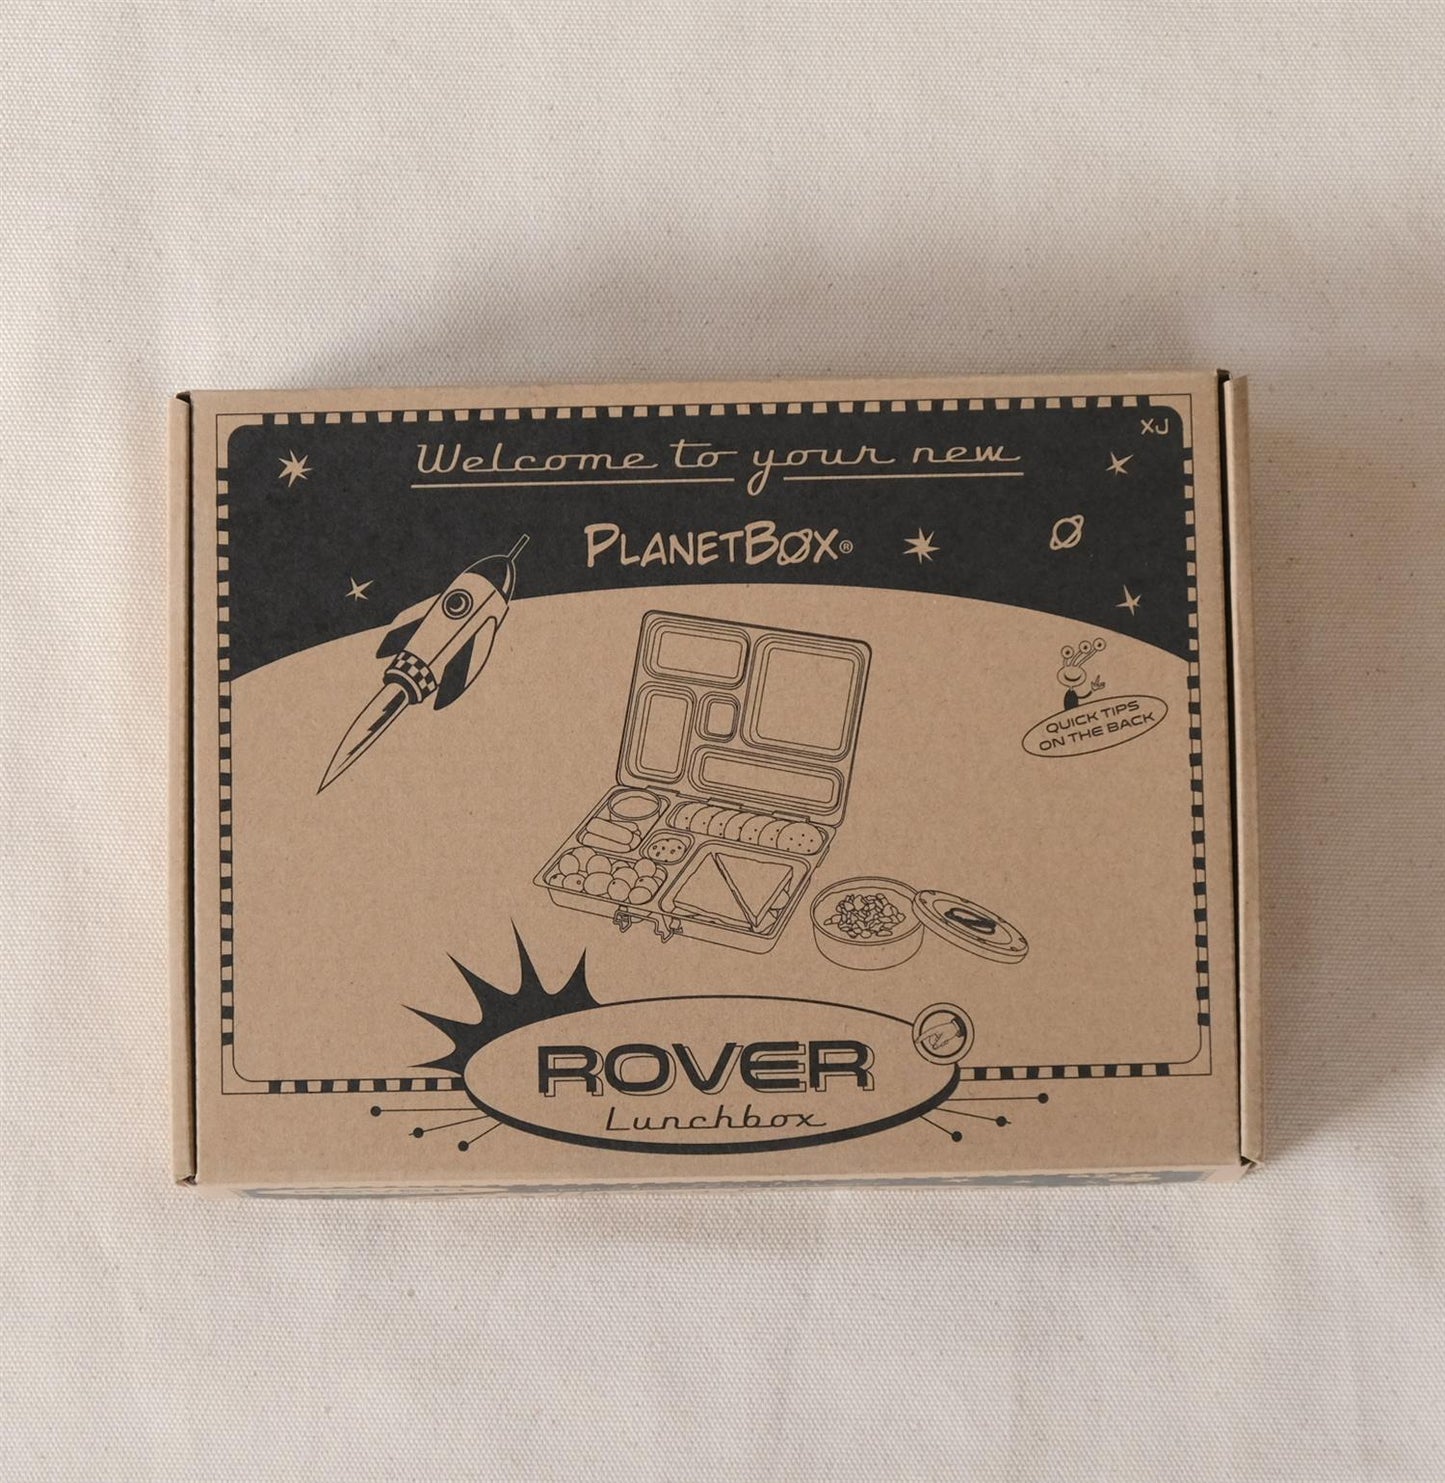 Rover lunsjboks